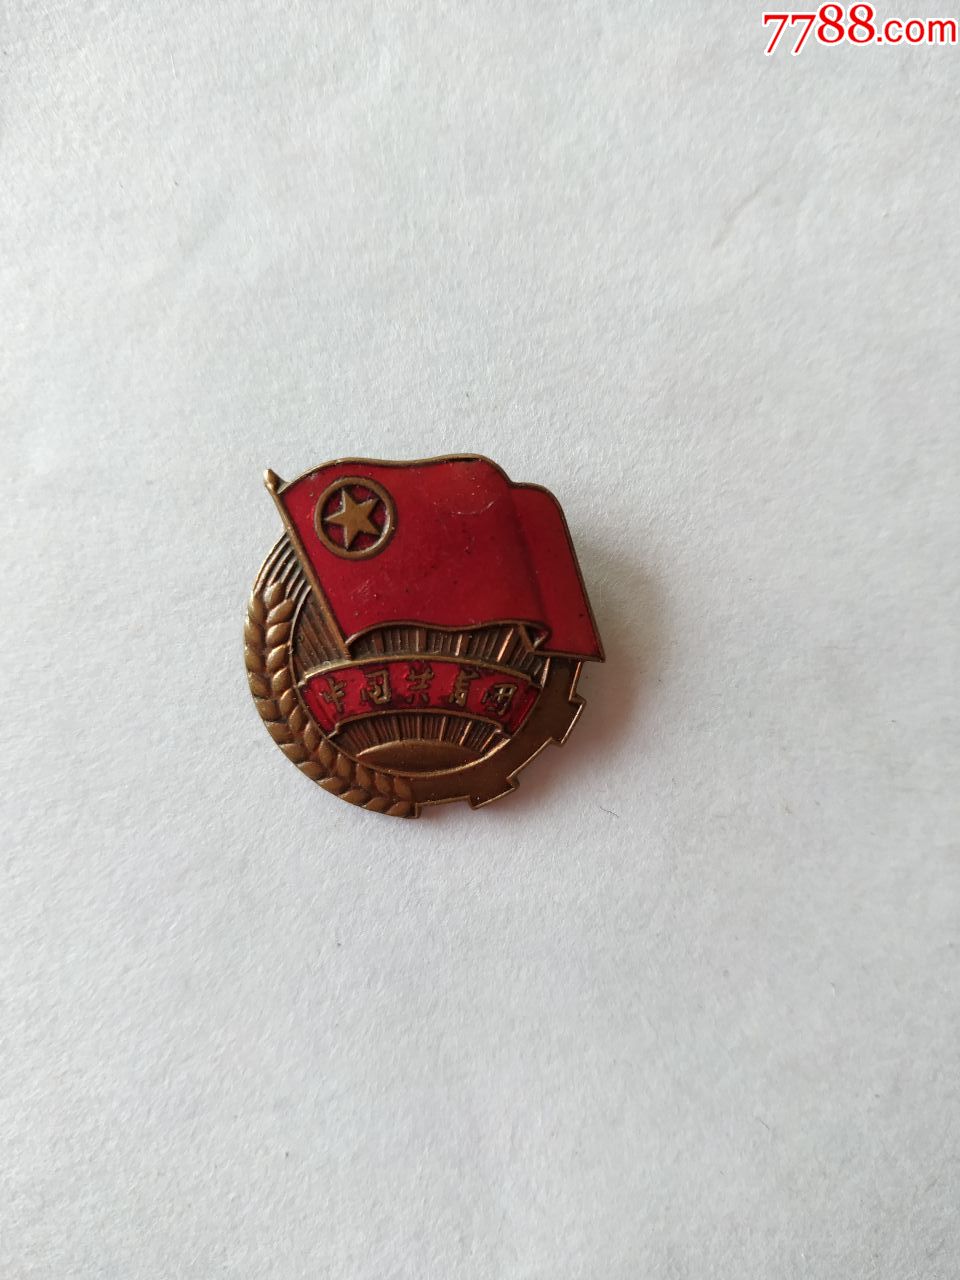 中国共青团团徽一枚